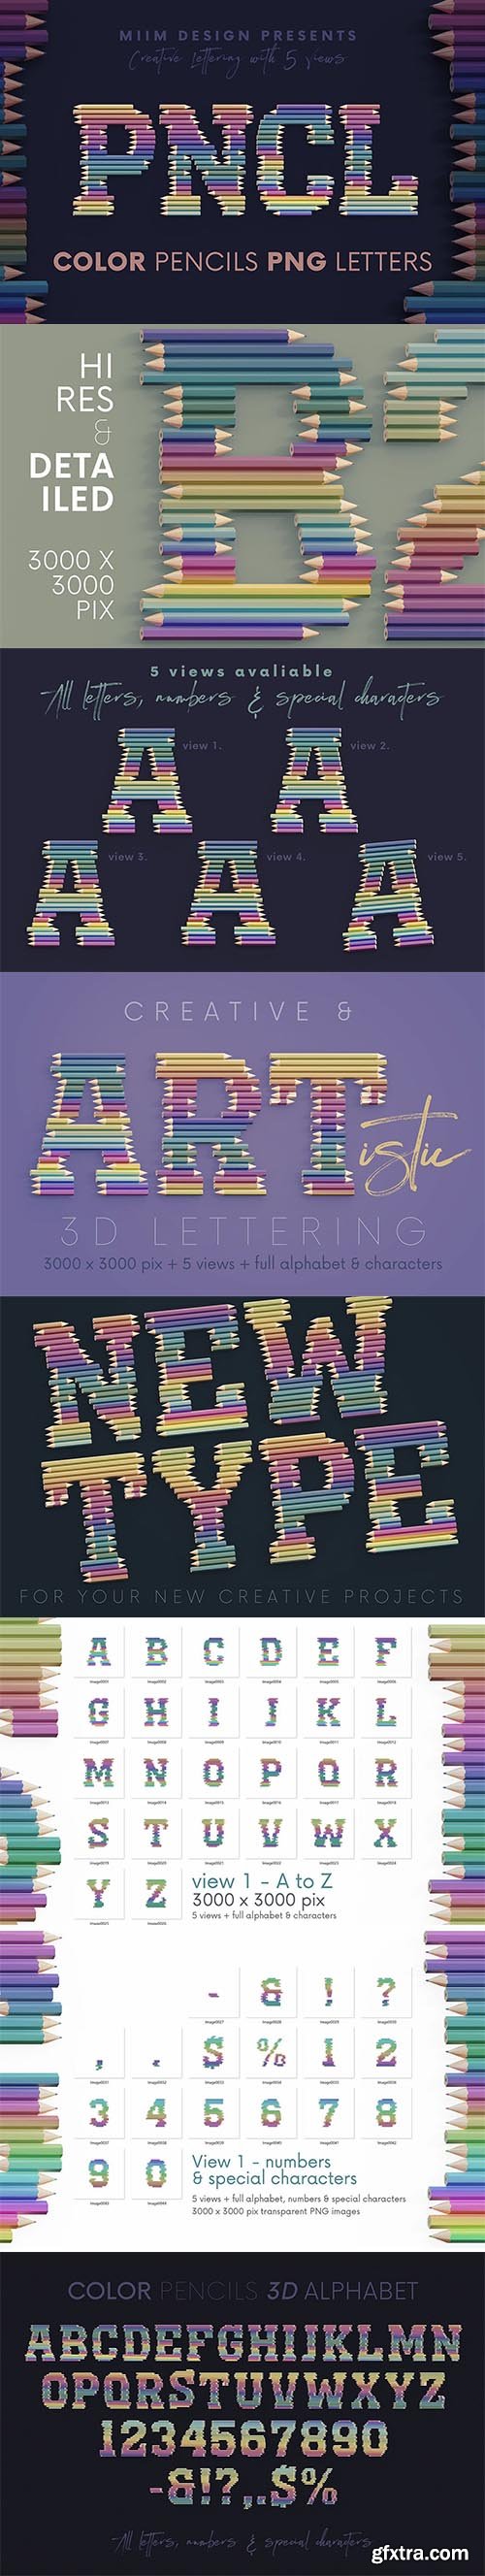 CreativeMarket - Color Pencils - 3D Lettering 7079802